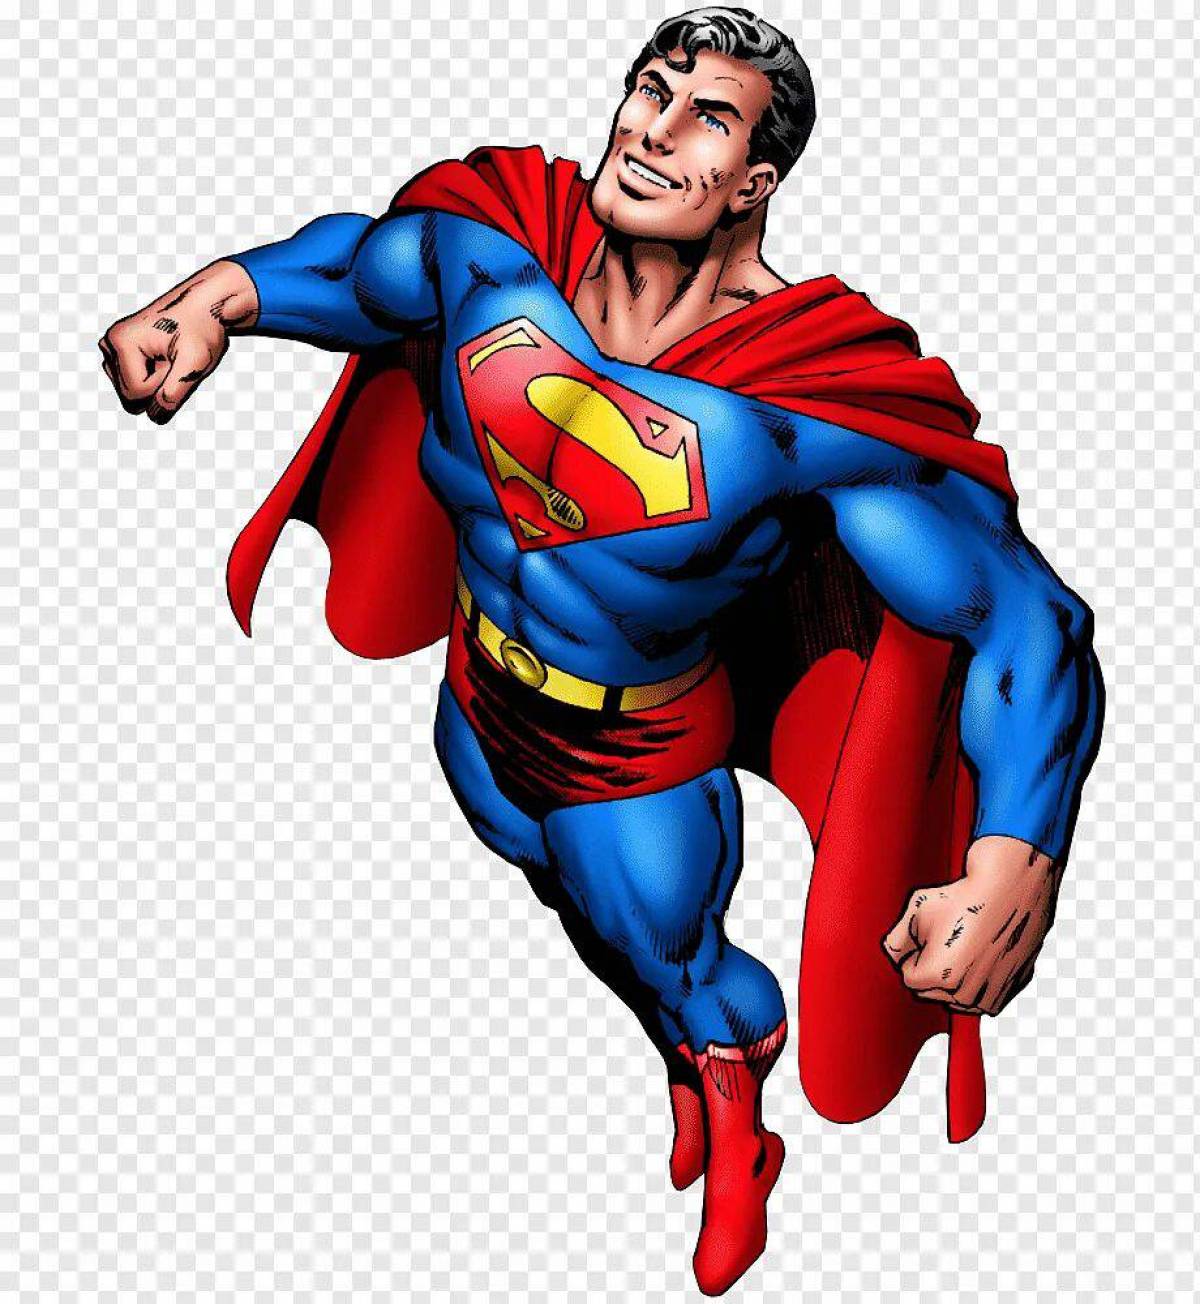 Картинки супер героев. Супермен. Супермен Марвел. Супергерои Марвел Супермен. Супер герой на белрм фоне.